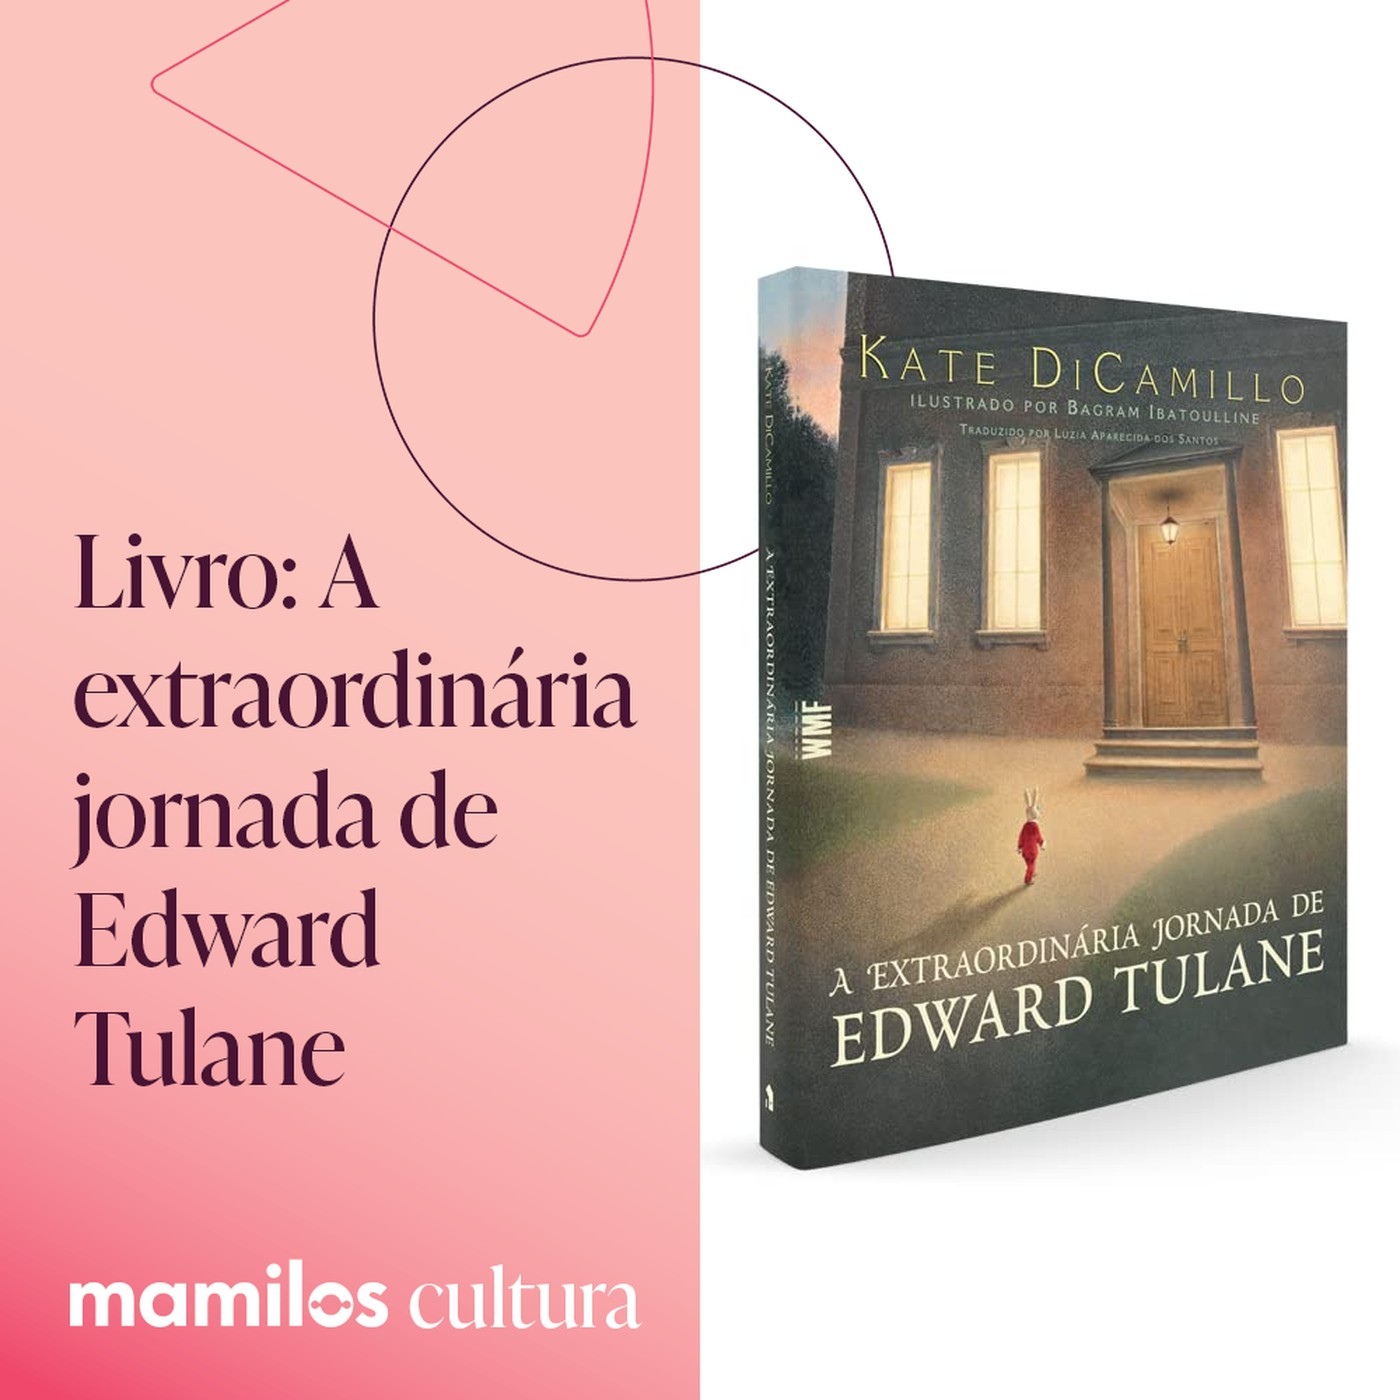 Mamilos Cultura 71: Livro “A extraordinária jornada de Edward Tulane” - encontros e desencontros